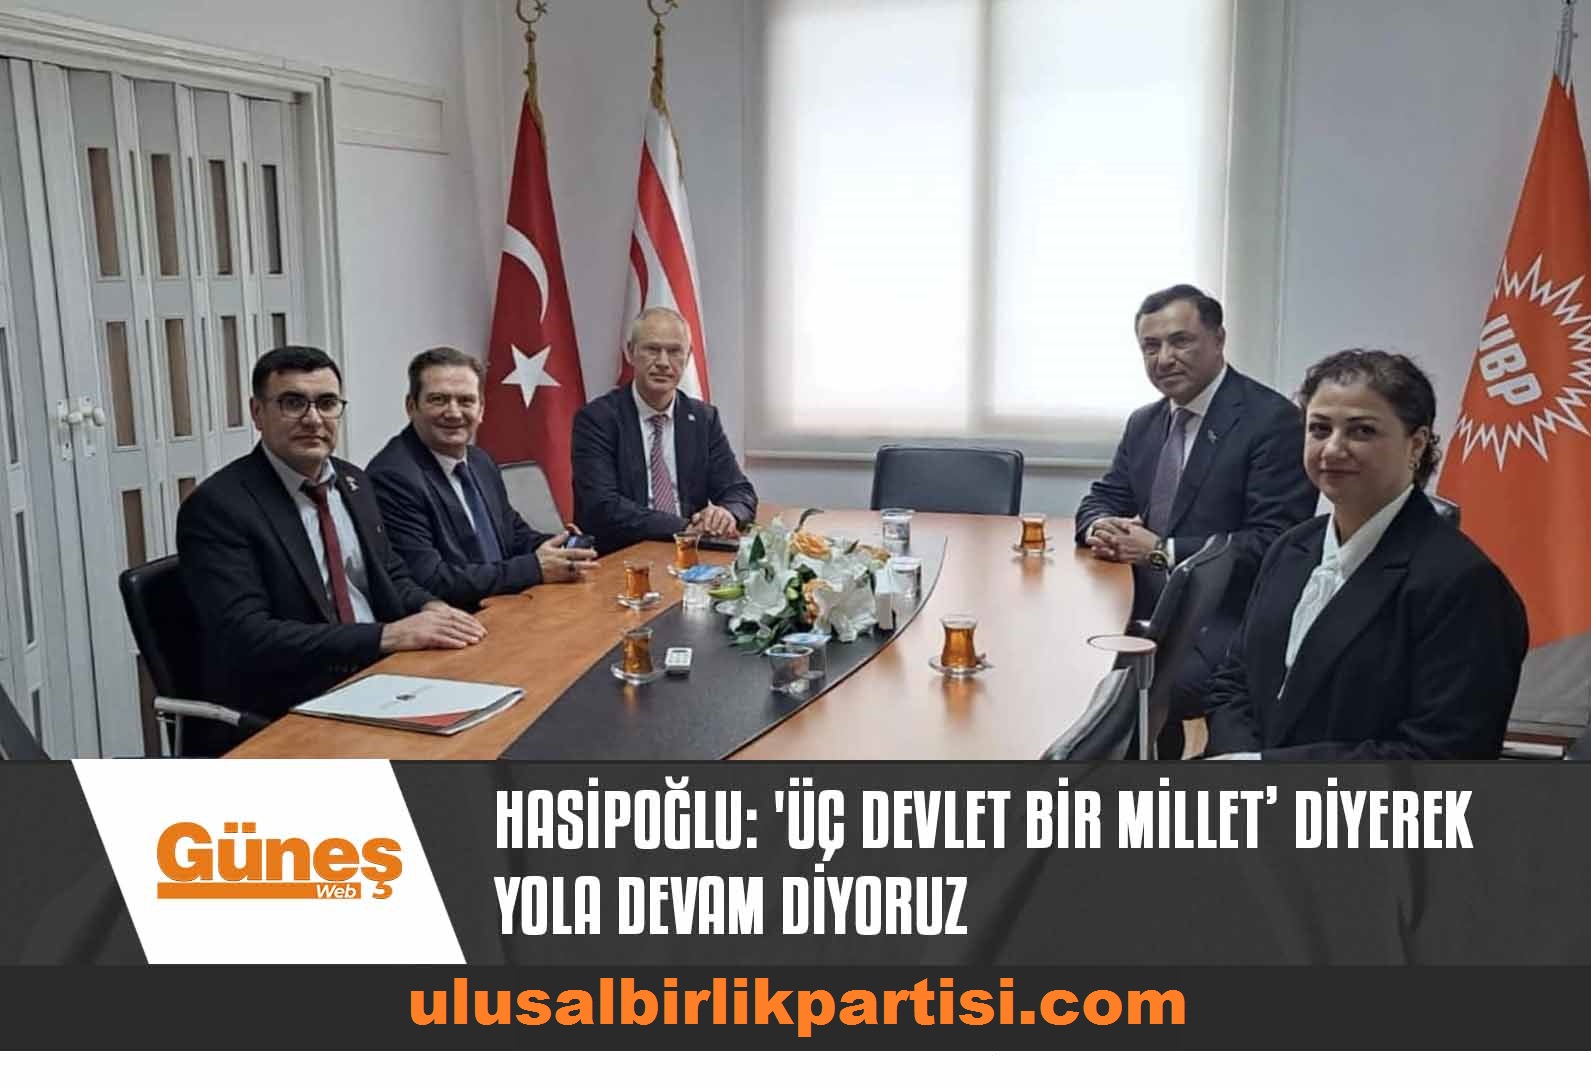 Read more about the article Hasipoğlu: ‘Üç devlet bir millet’ diyerek yola devam diyoruz